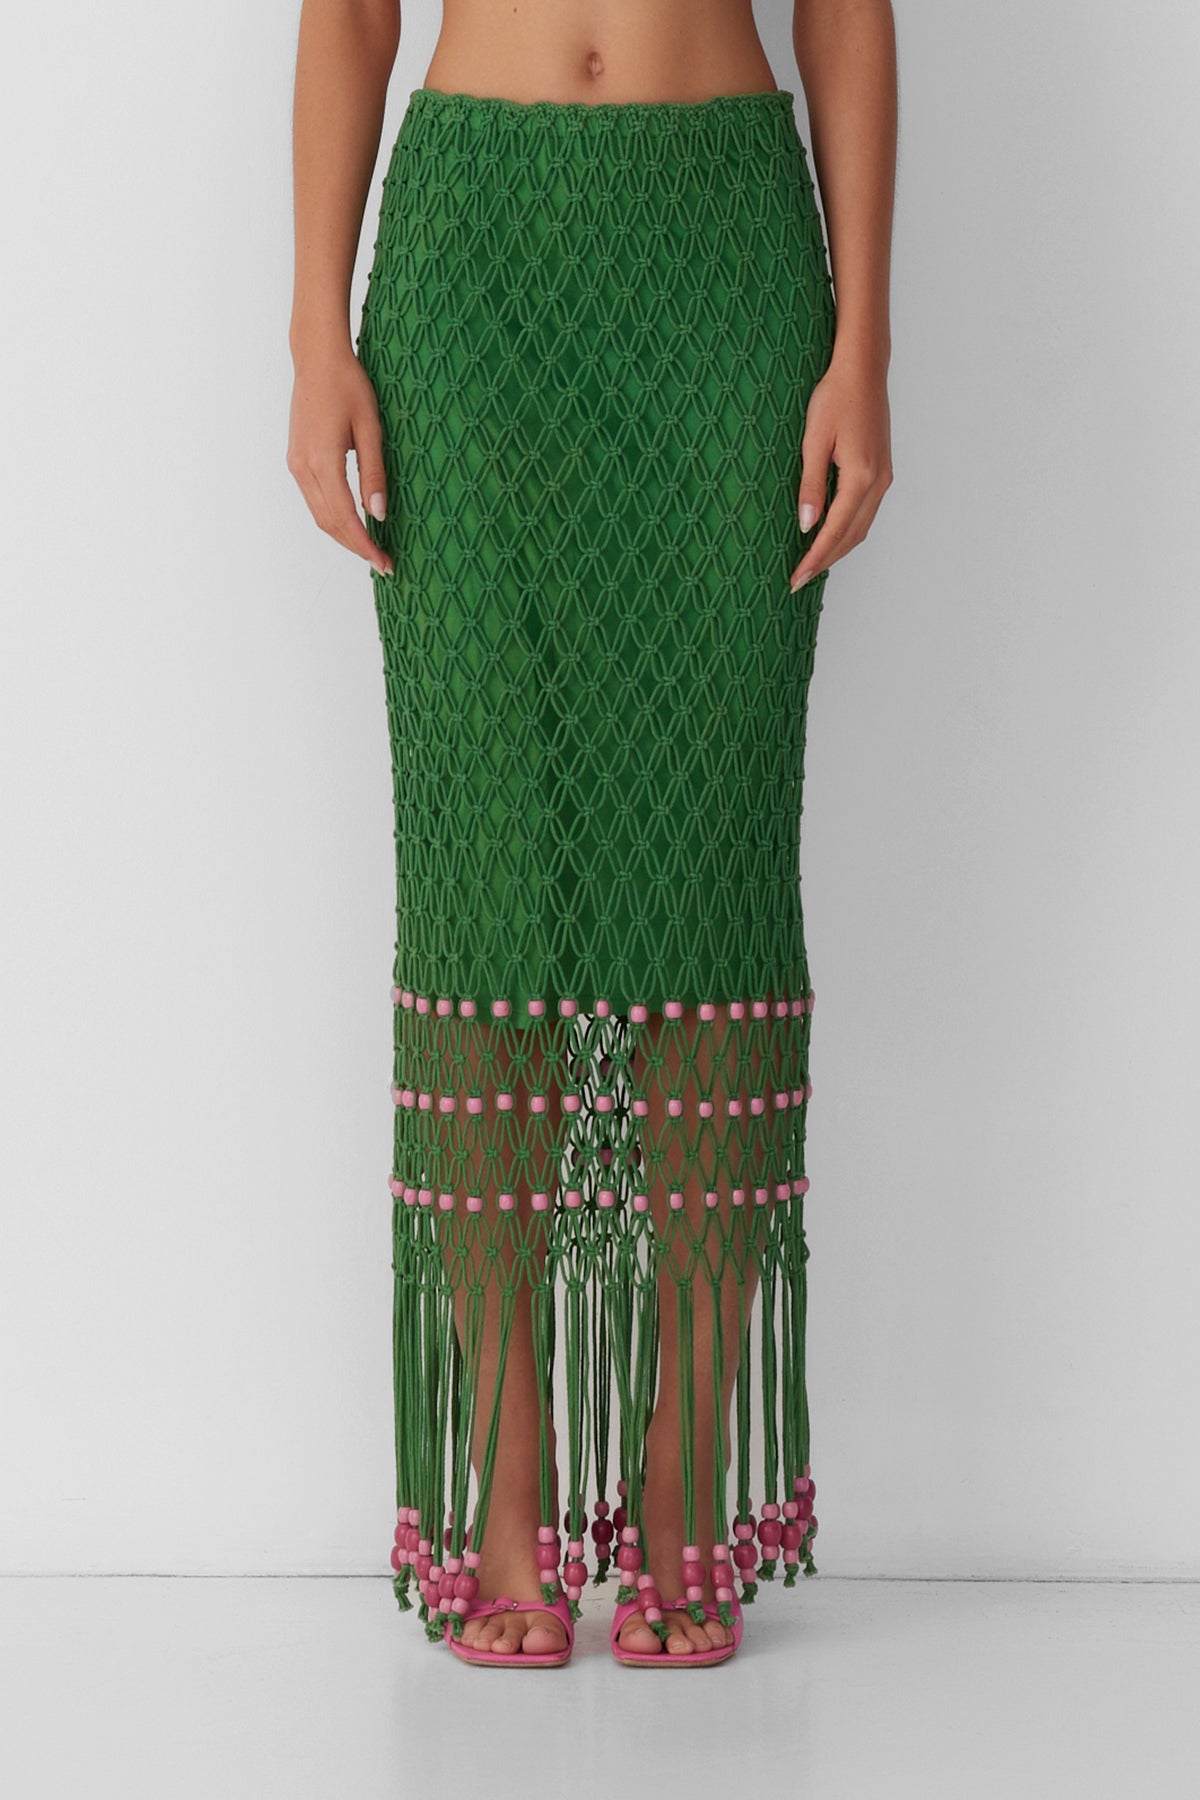 Reis Beaded Macrame Skirt - Emerald